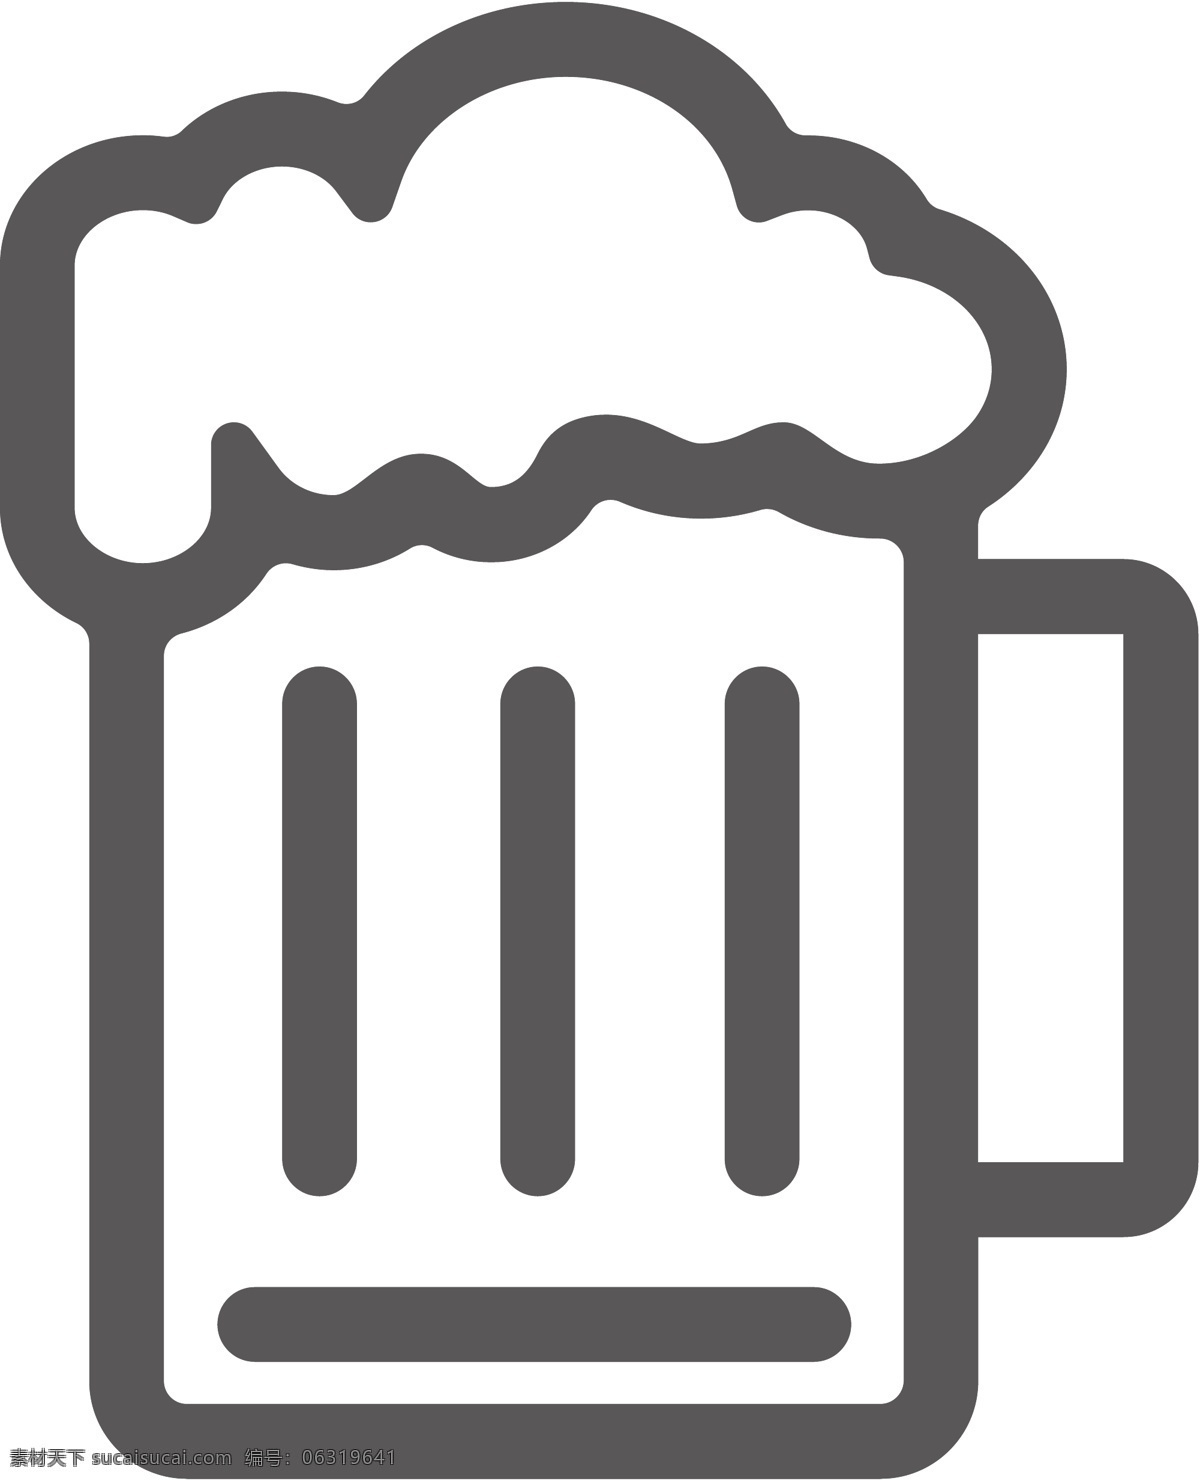 啤酒素材 啤酒 啤酒图案 啤酒图标 扎啤 啤酒设计